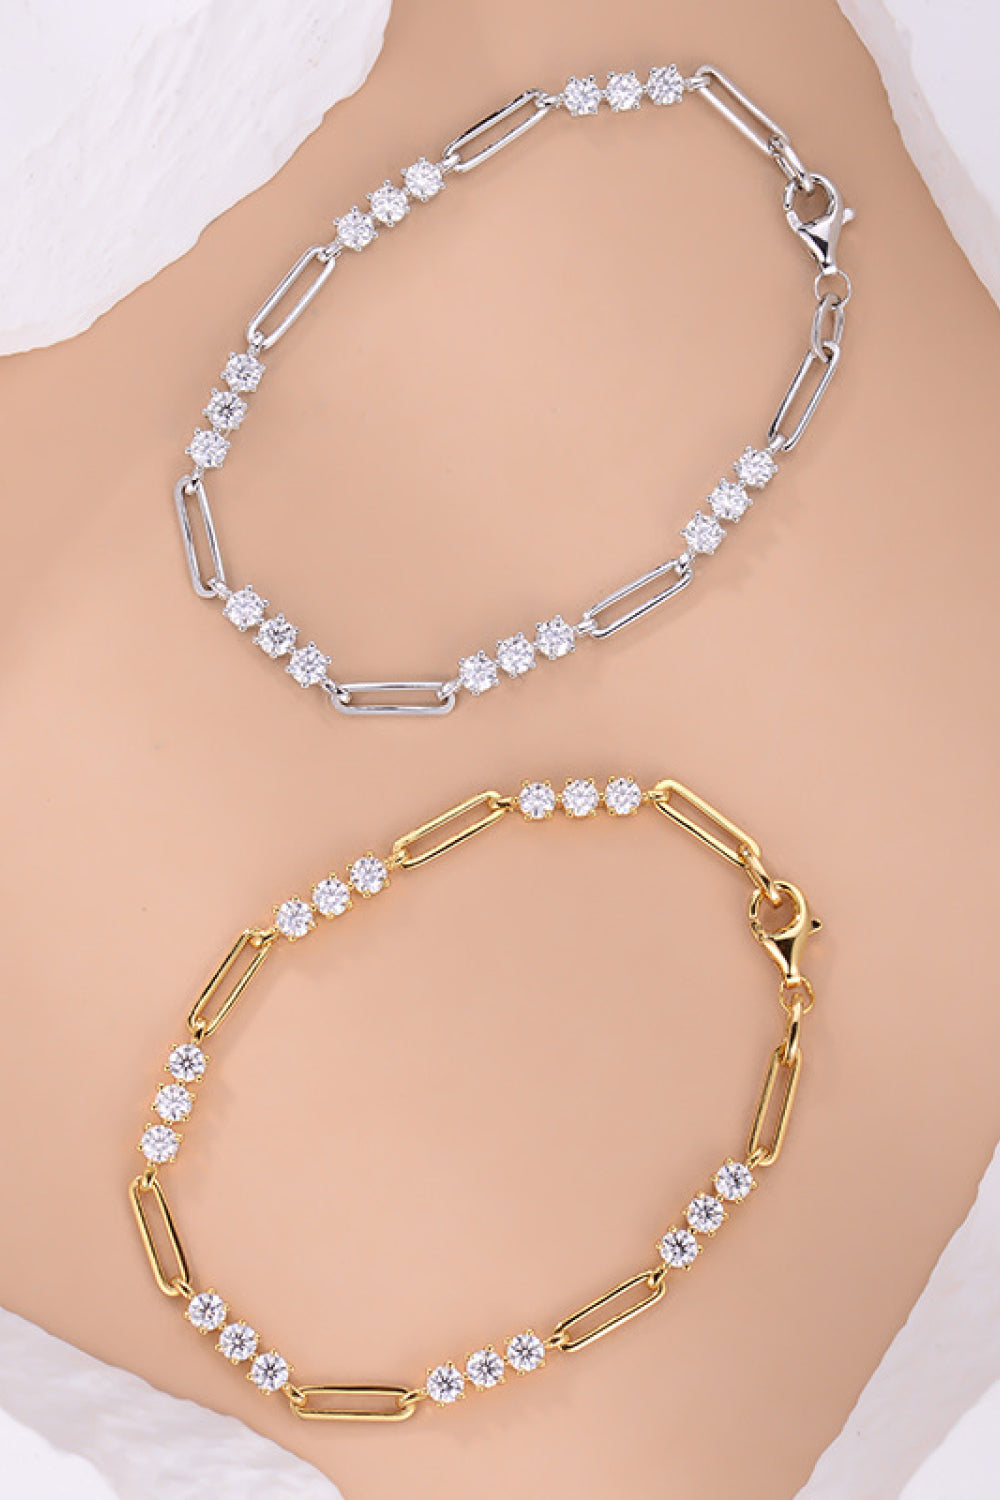 1.8 Carat Moissanite 925 Sterling Silver Bracelet - Women’s Jewelry - Bracelets - 10 - 2024